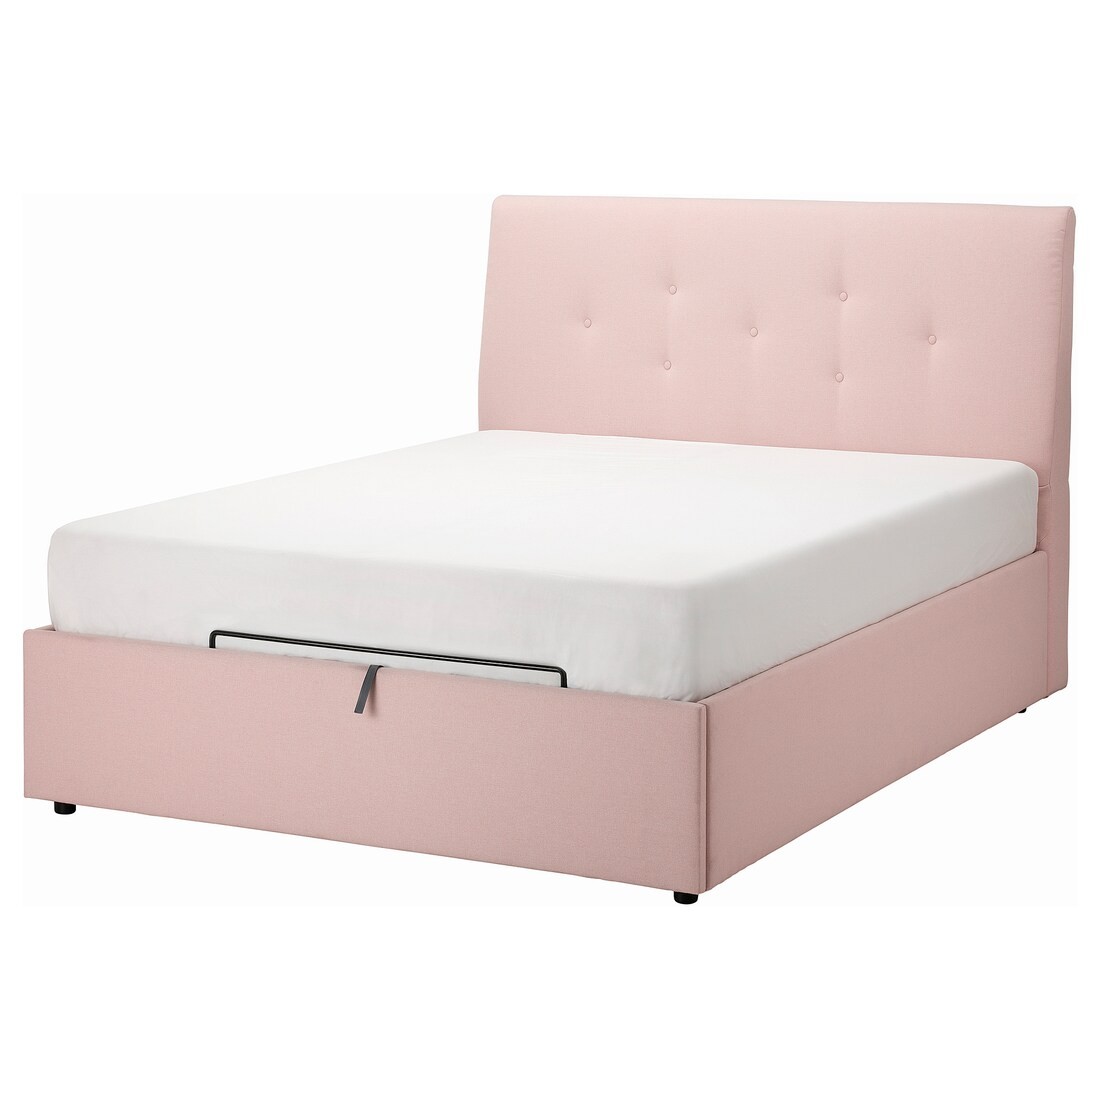 IDANÄS ІДАНЕС Ліжко двоспальне з підйомним механізмом, Gunnared ніжно-рожевий, 140x200 см